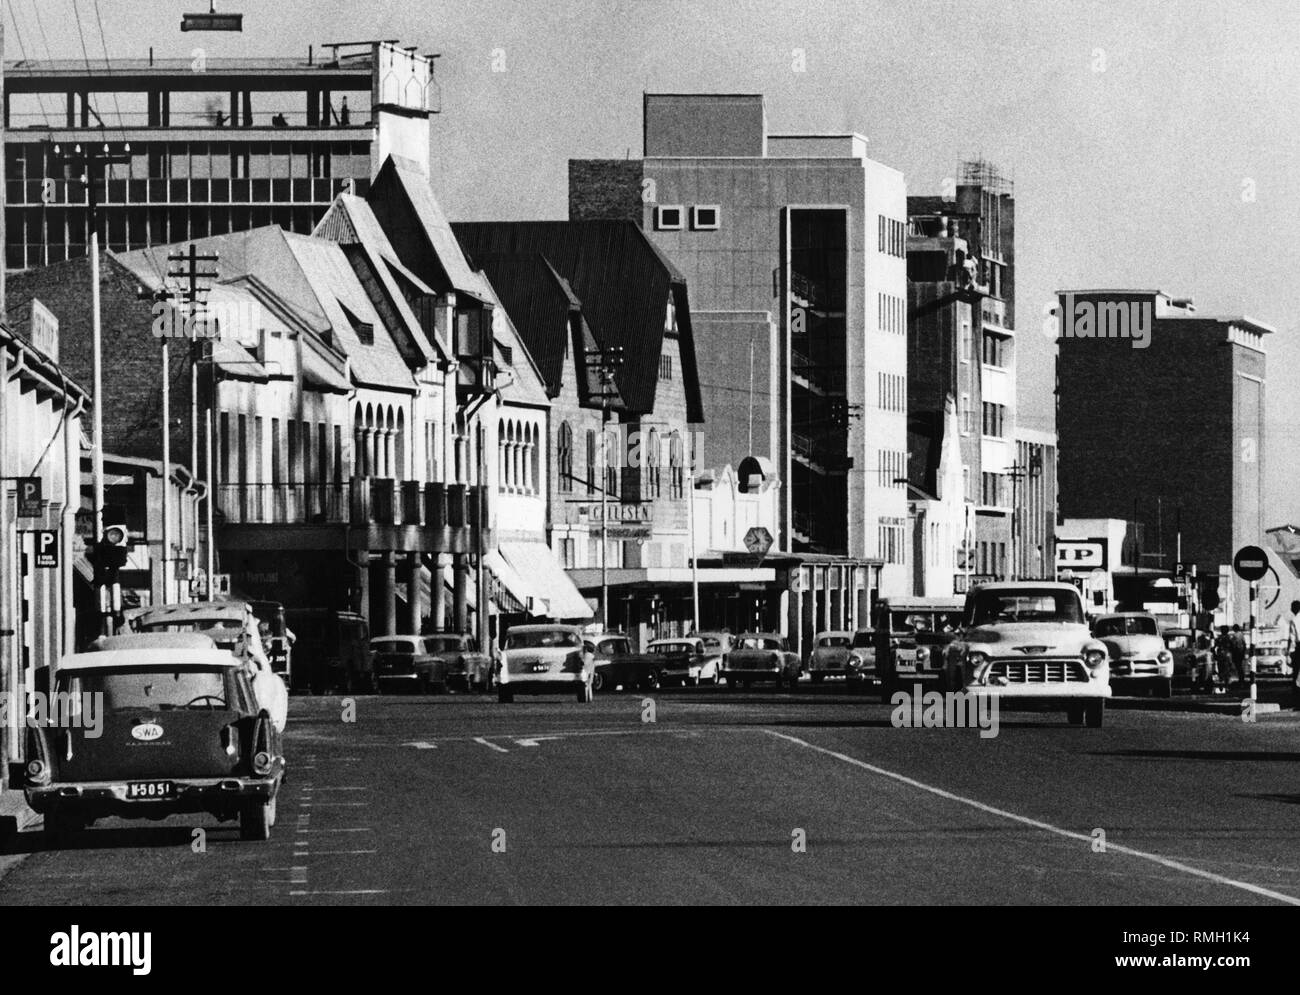 Südwestafrika (heute: Namibia): Bild zeigt die Kaiserstraße in Windhoek mit Häusern und Autos. Stockfoto